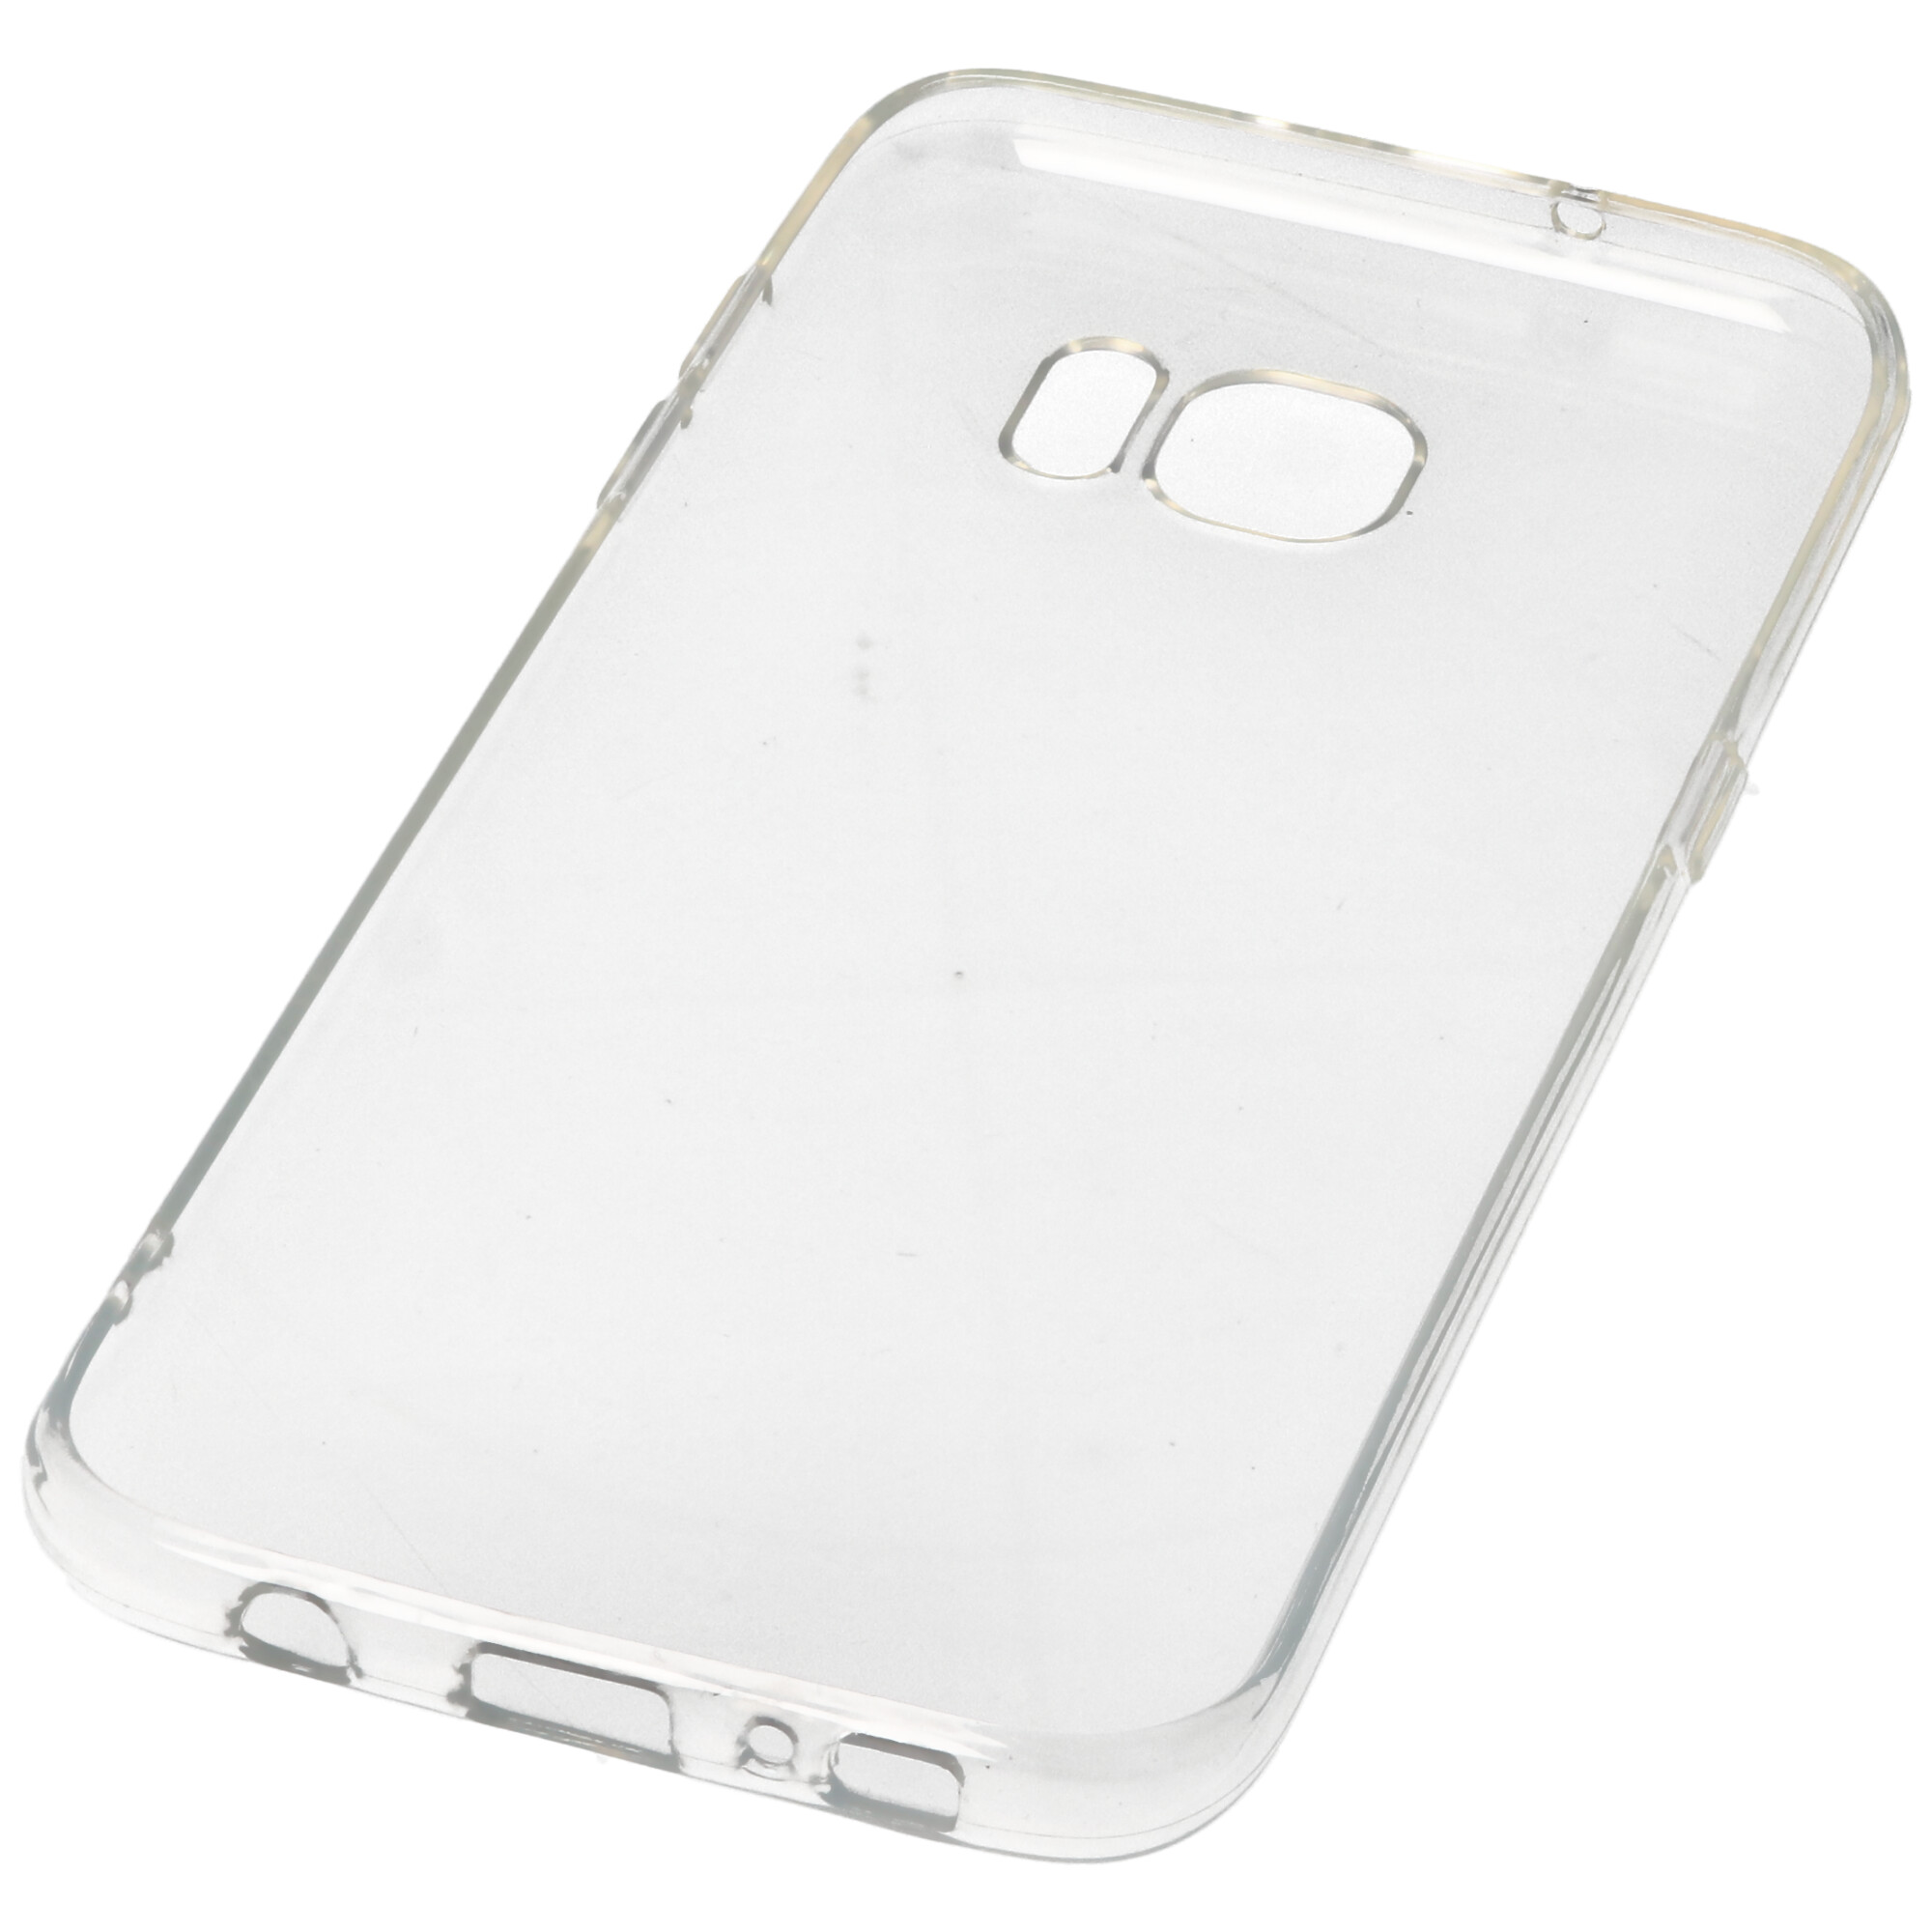 Hülle passend für Samsung Galaxy S7 Edge - transparente Schutzhülle, Anti-Gelb Luftkissen Fallschutz Silikon Handyhülle robustes TPU Case